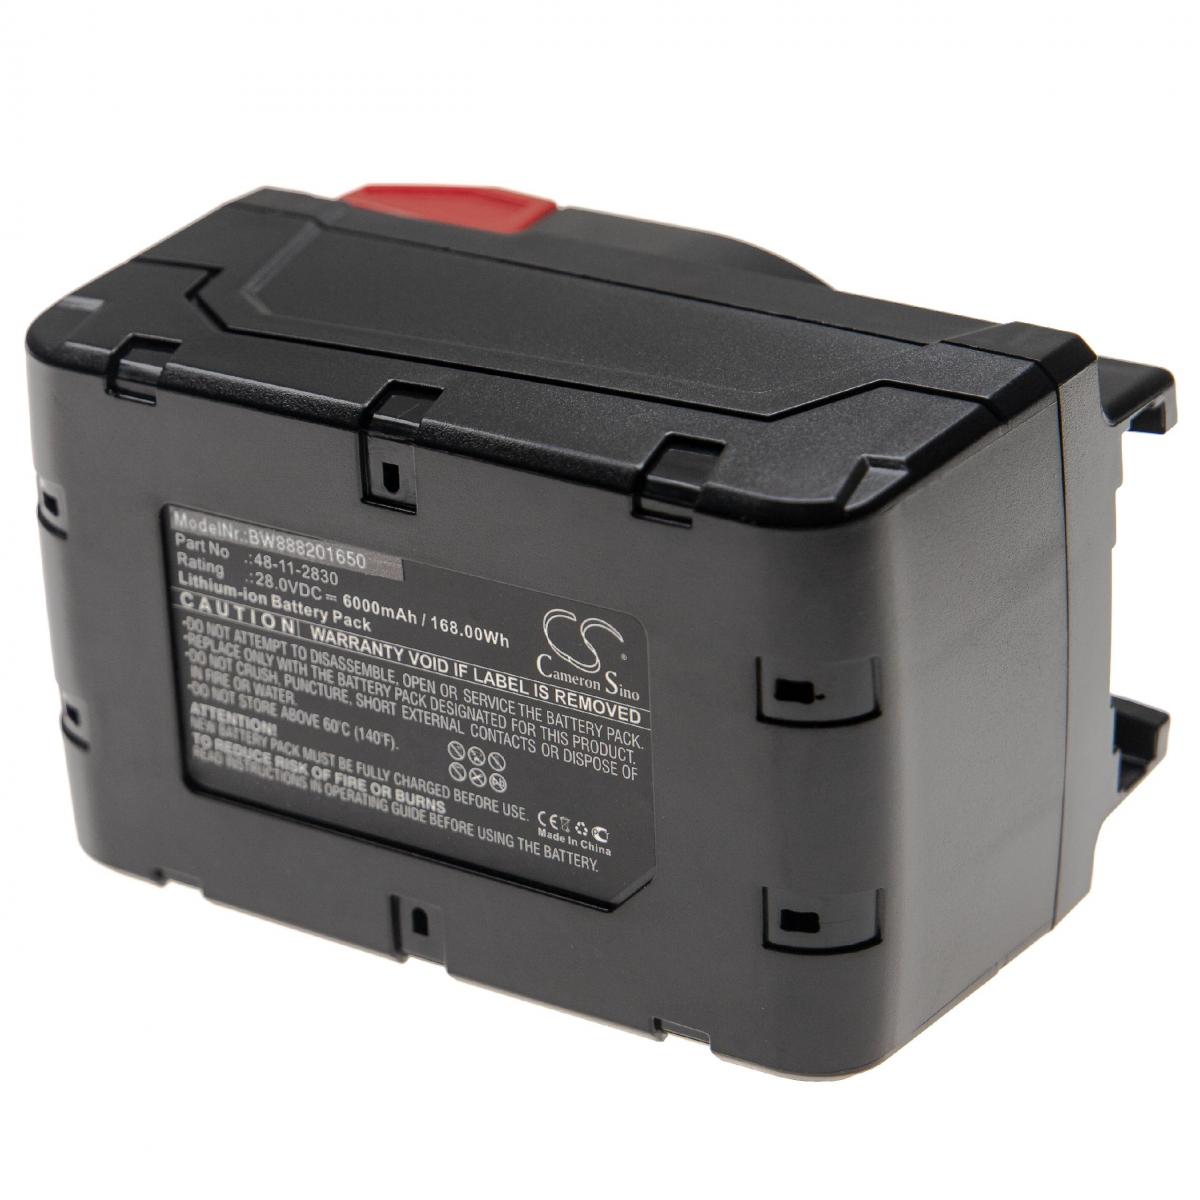 Vhbw - vhbw Batterie compatible avec Milwaukee 0726-22, 48-06-2860, 48-11-2830, HD28 AG, HD28 AG 125, HD28 CS outil électrique (6000mAh Li-Ion 28V) - Clouterie